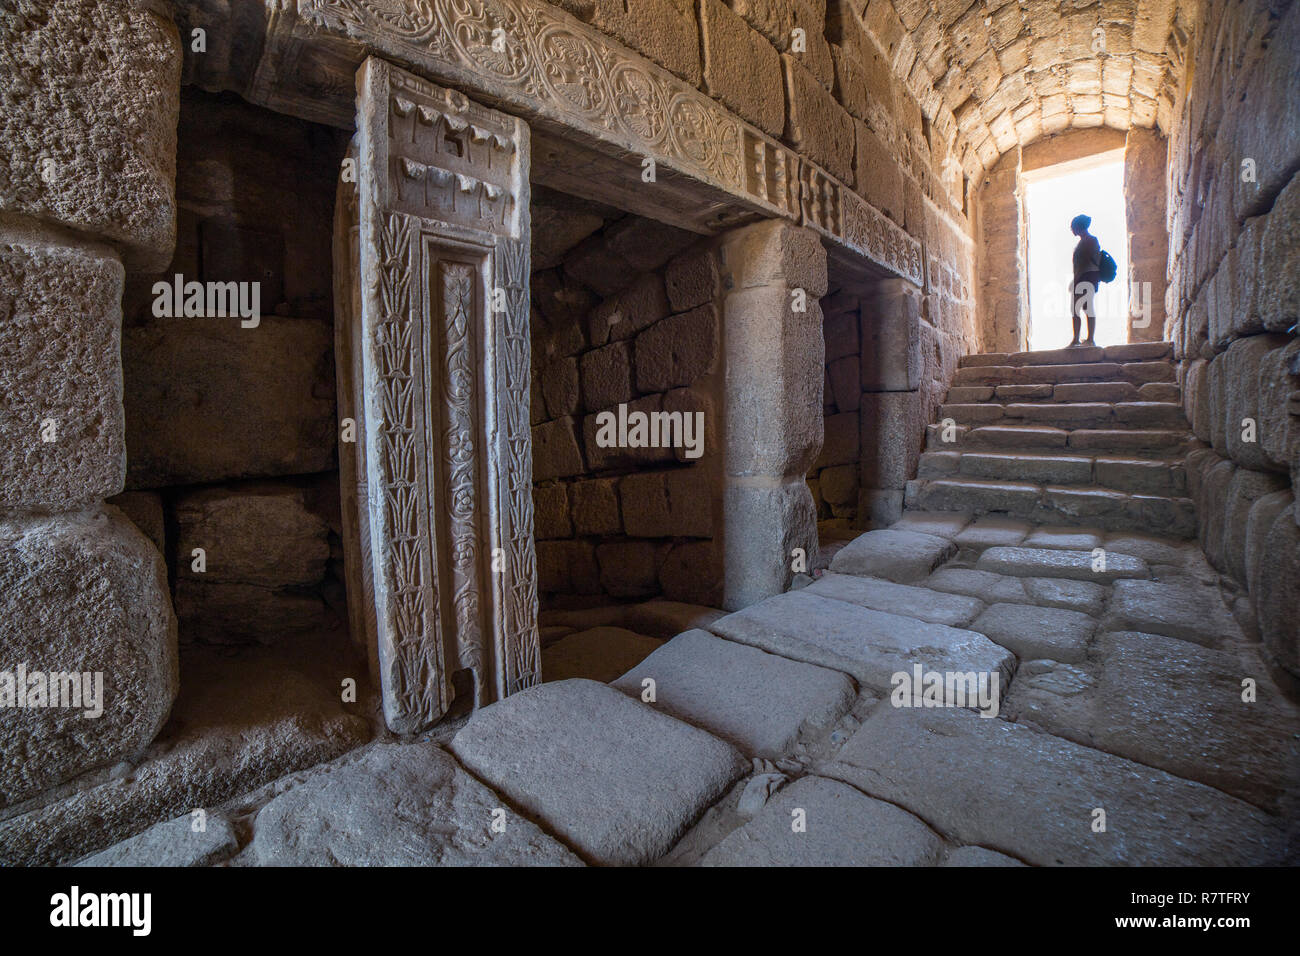 Visitor at North entry of Arabic water cistern at Alcazaba citadel. Merida, Extremadura, Spain. Interior view Stock Photo